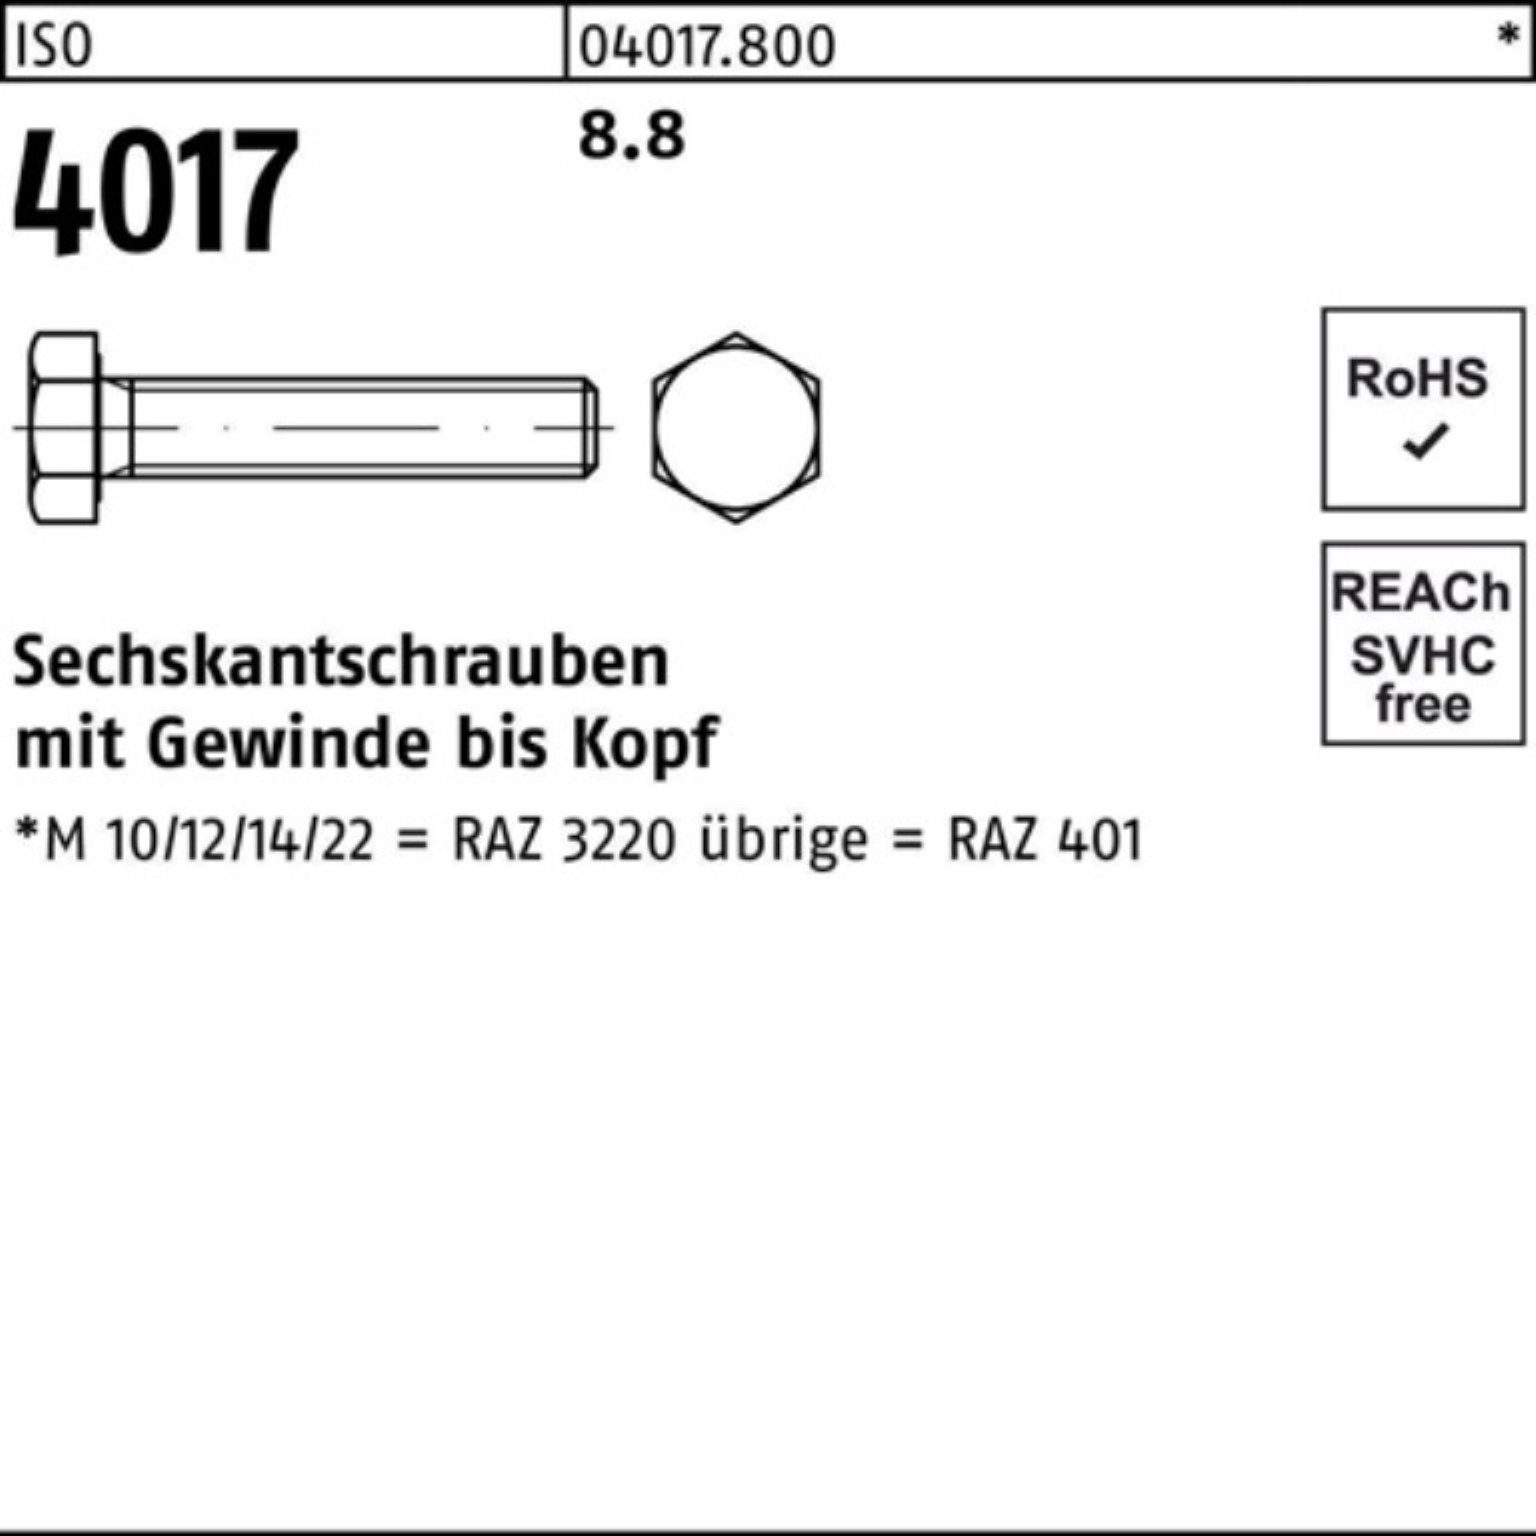 VG Sechskantschraube Sechskantschraube Bufab Stück 8.8 ISO 1 320 100er 4017 M24x ISO 401 Pack